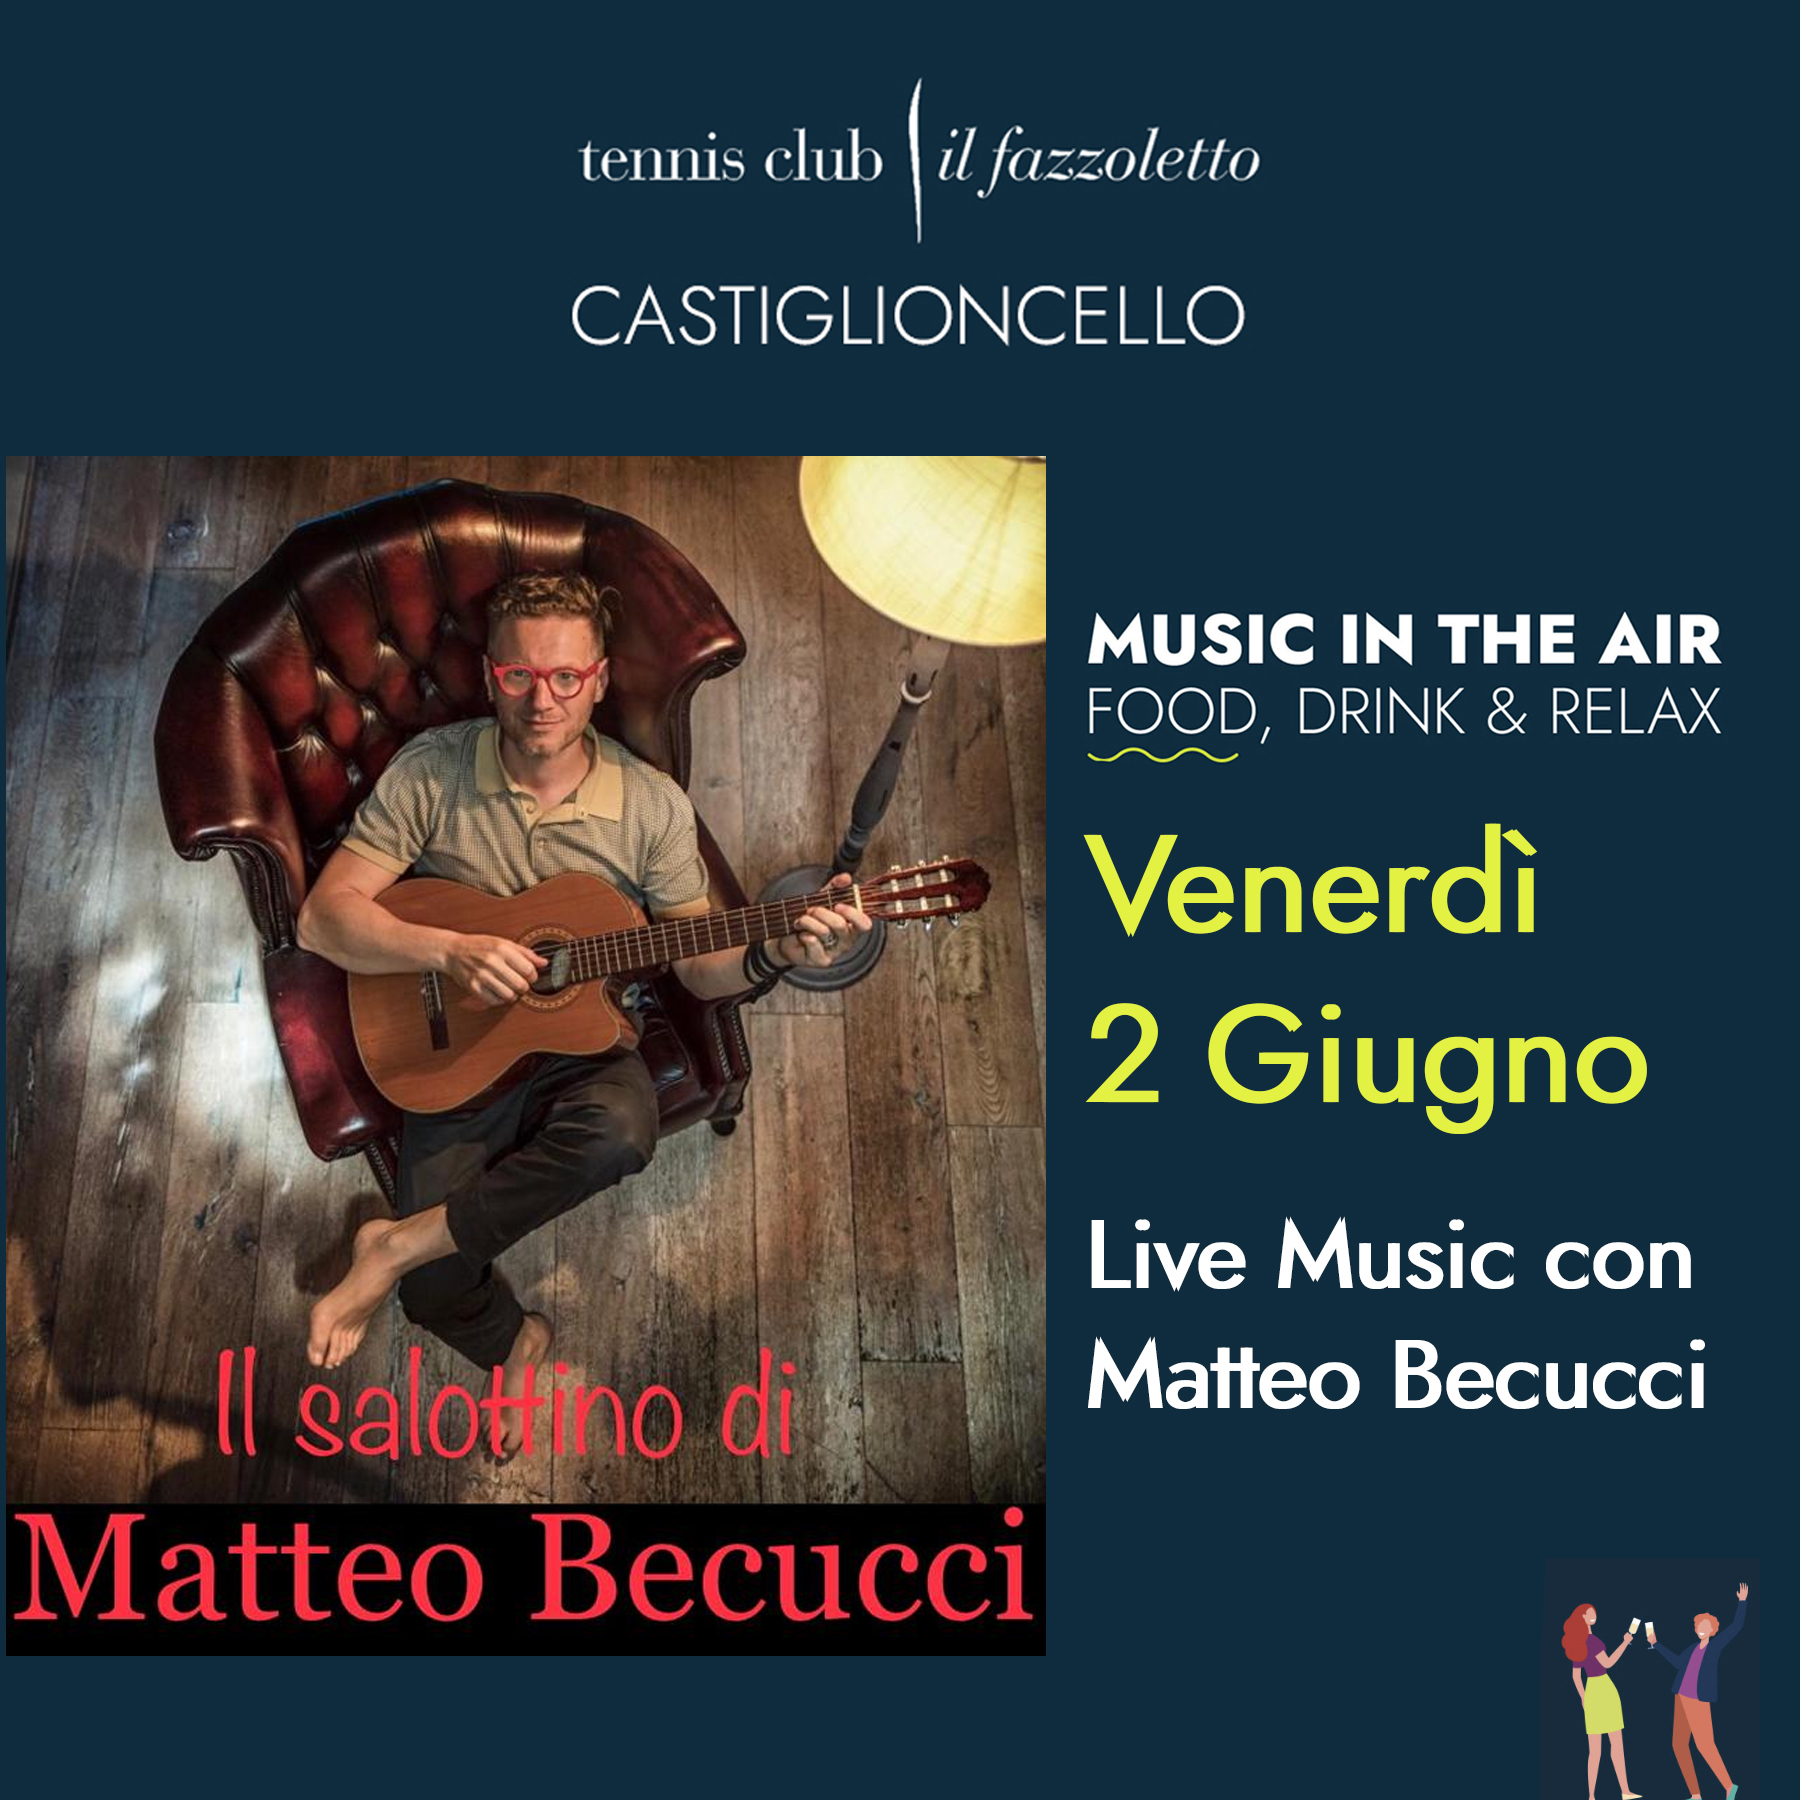 Matteo Becucci Live al Tennis Club Castiglioncello Venerdì 2 Giugno